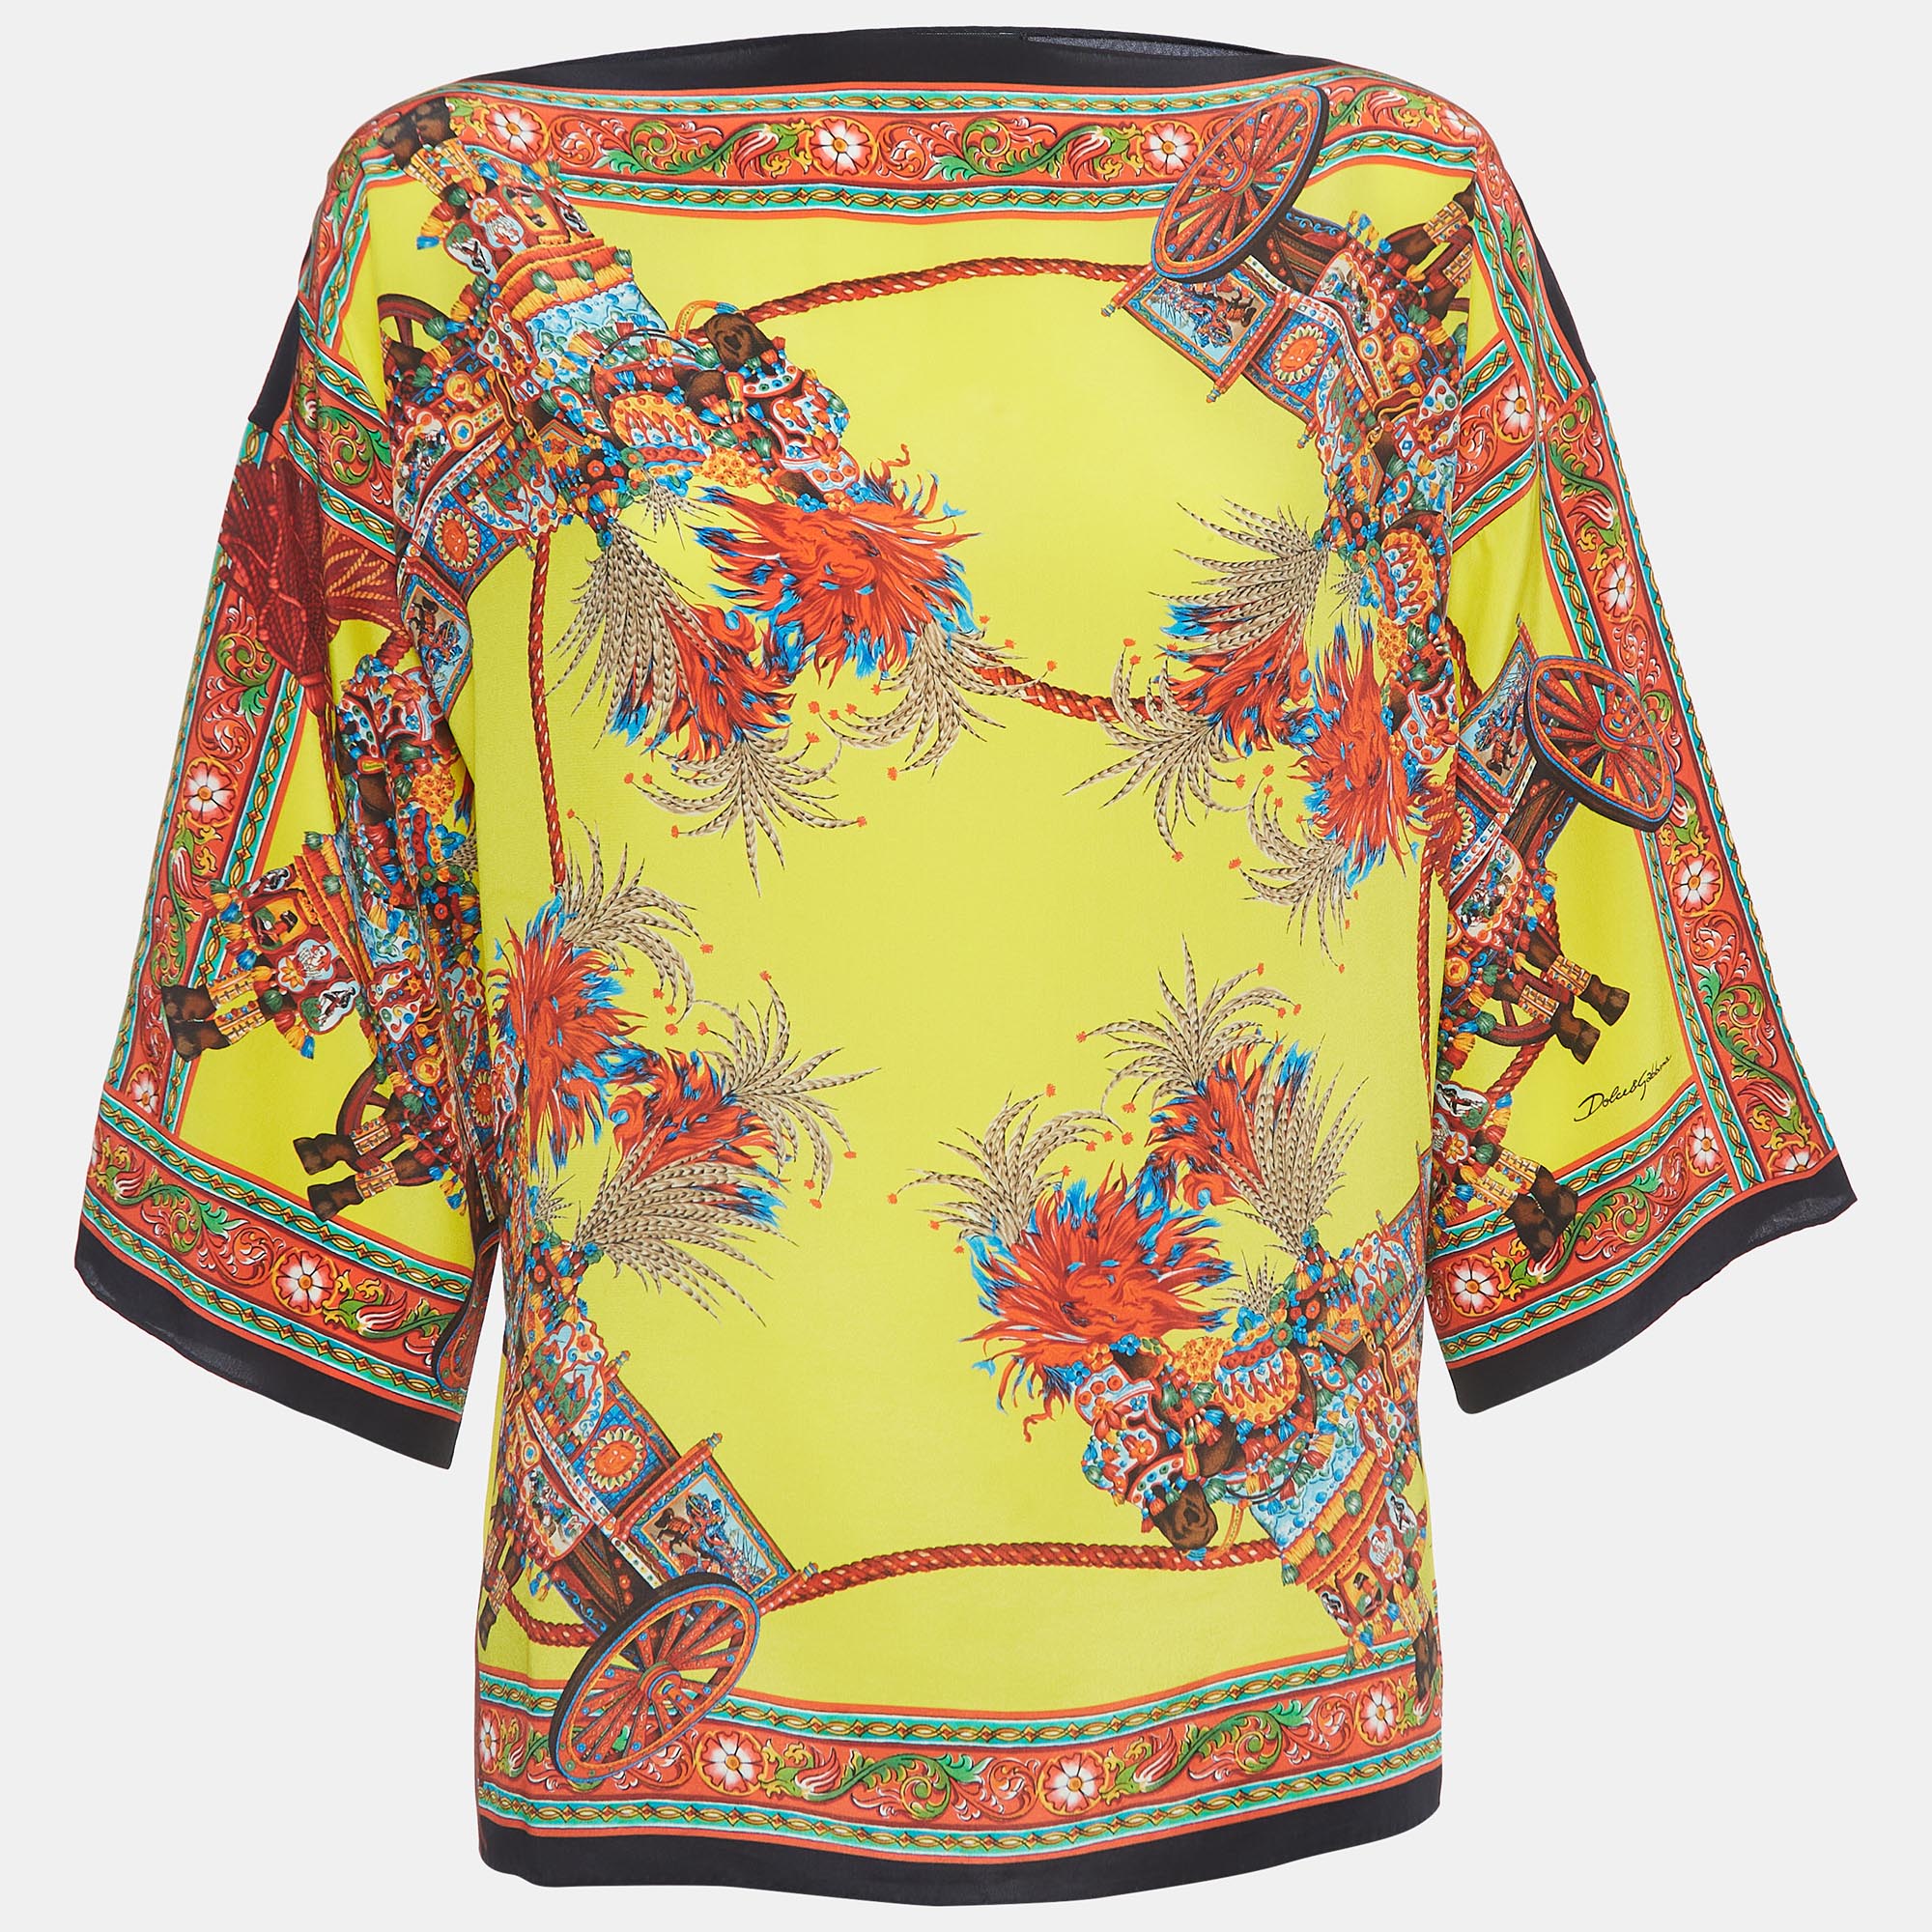 Dolce & Gabbana Multicolor Print Silk Boat Neck Top S